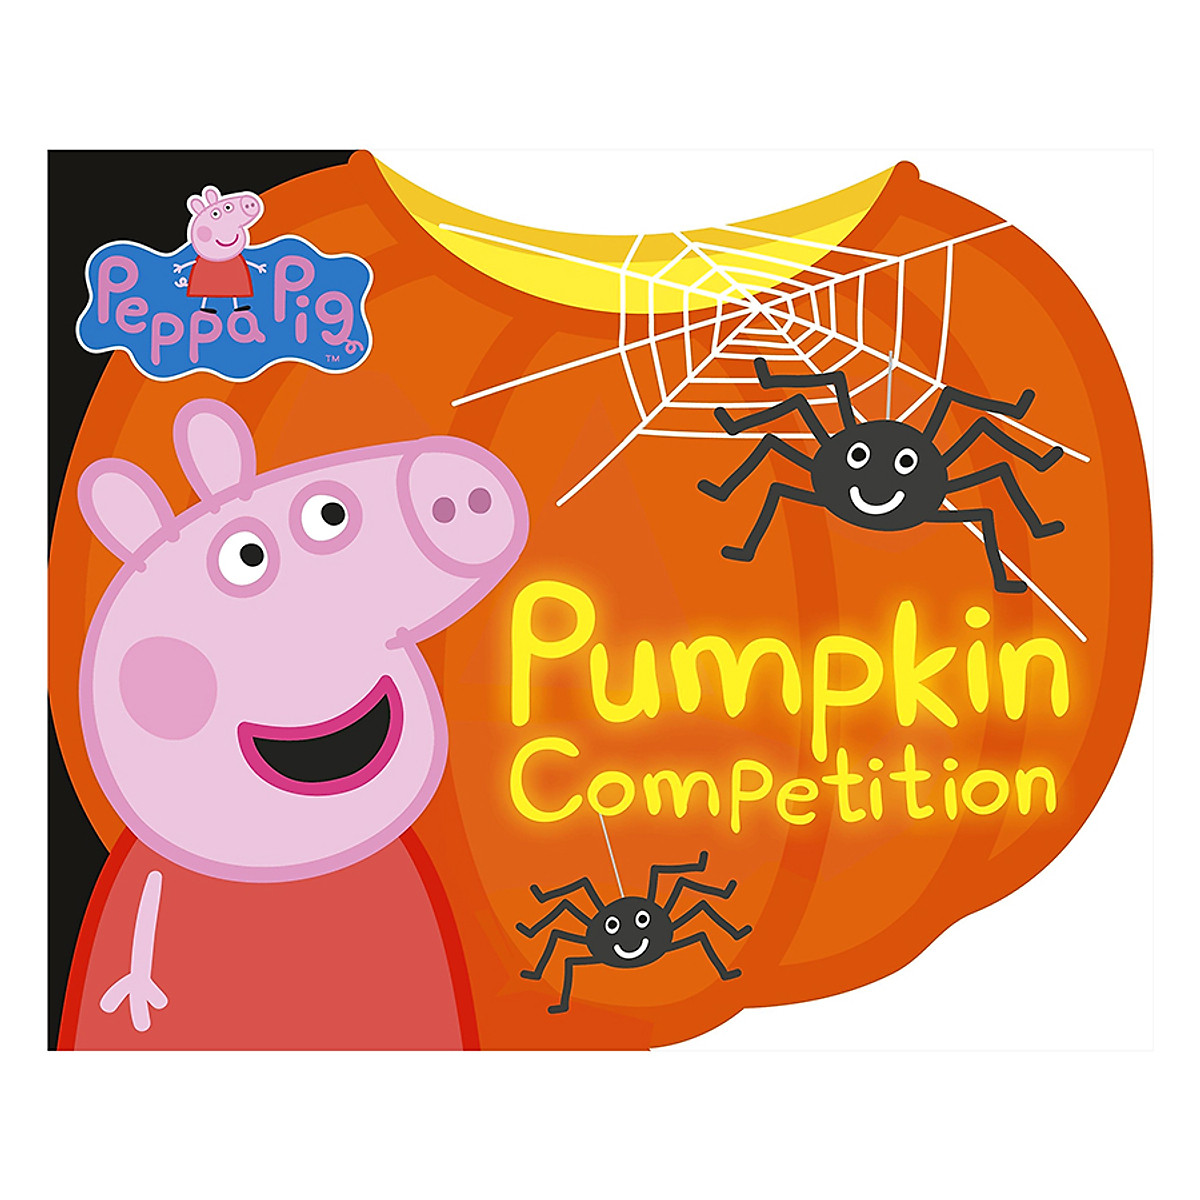 [Hàng thanh lý miễn đổi trả] Peppa Pig: Pumpkin Competition